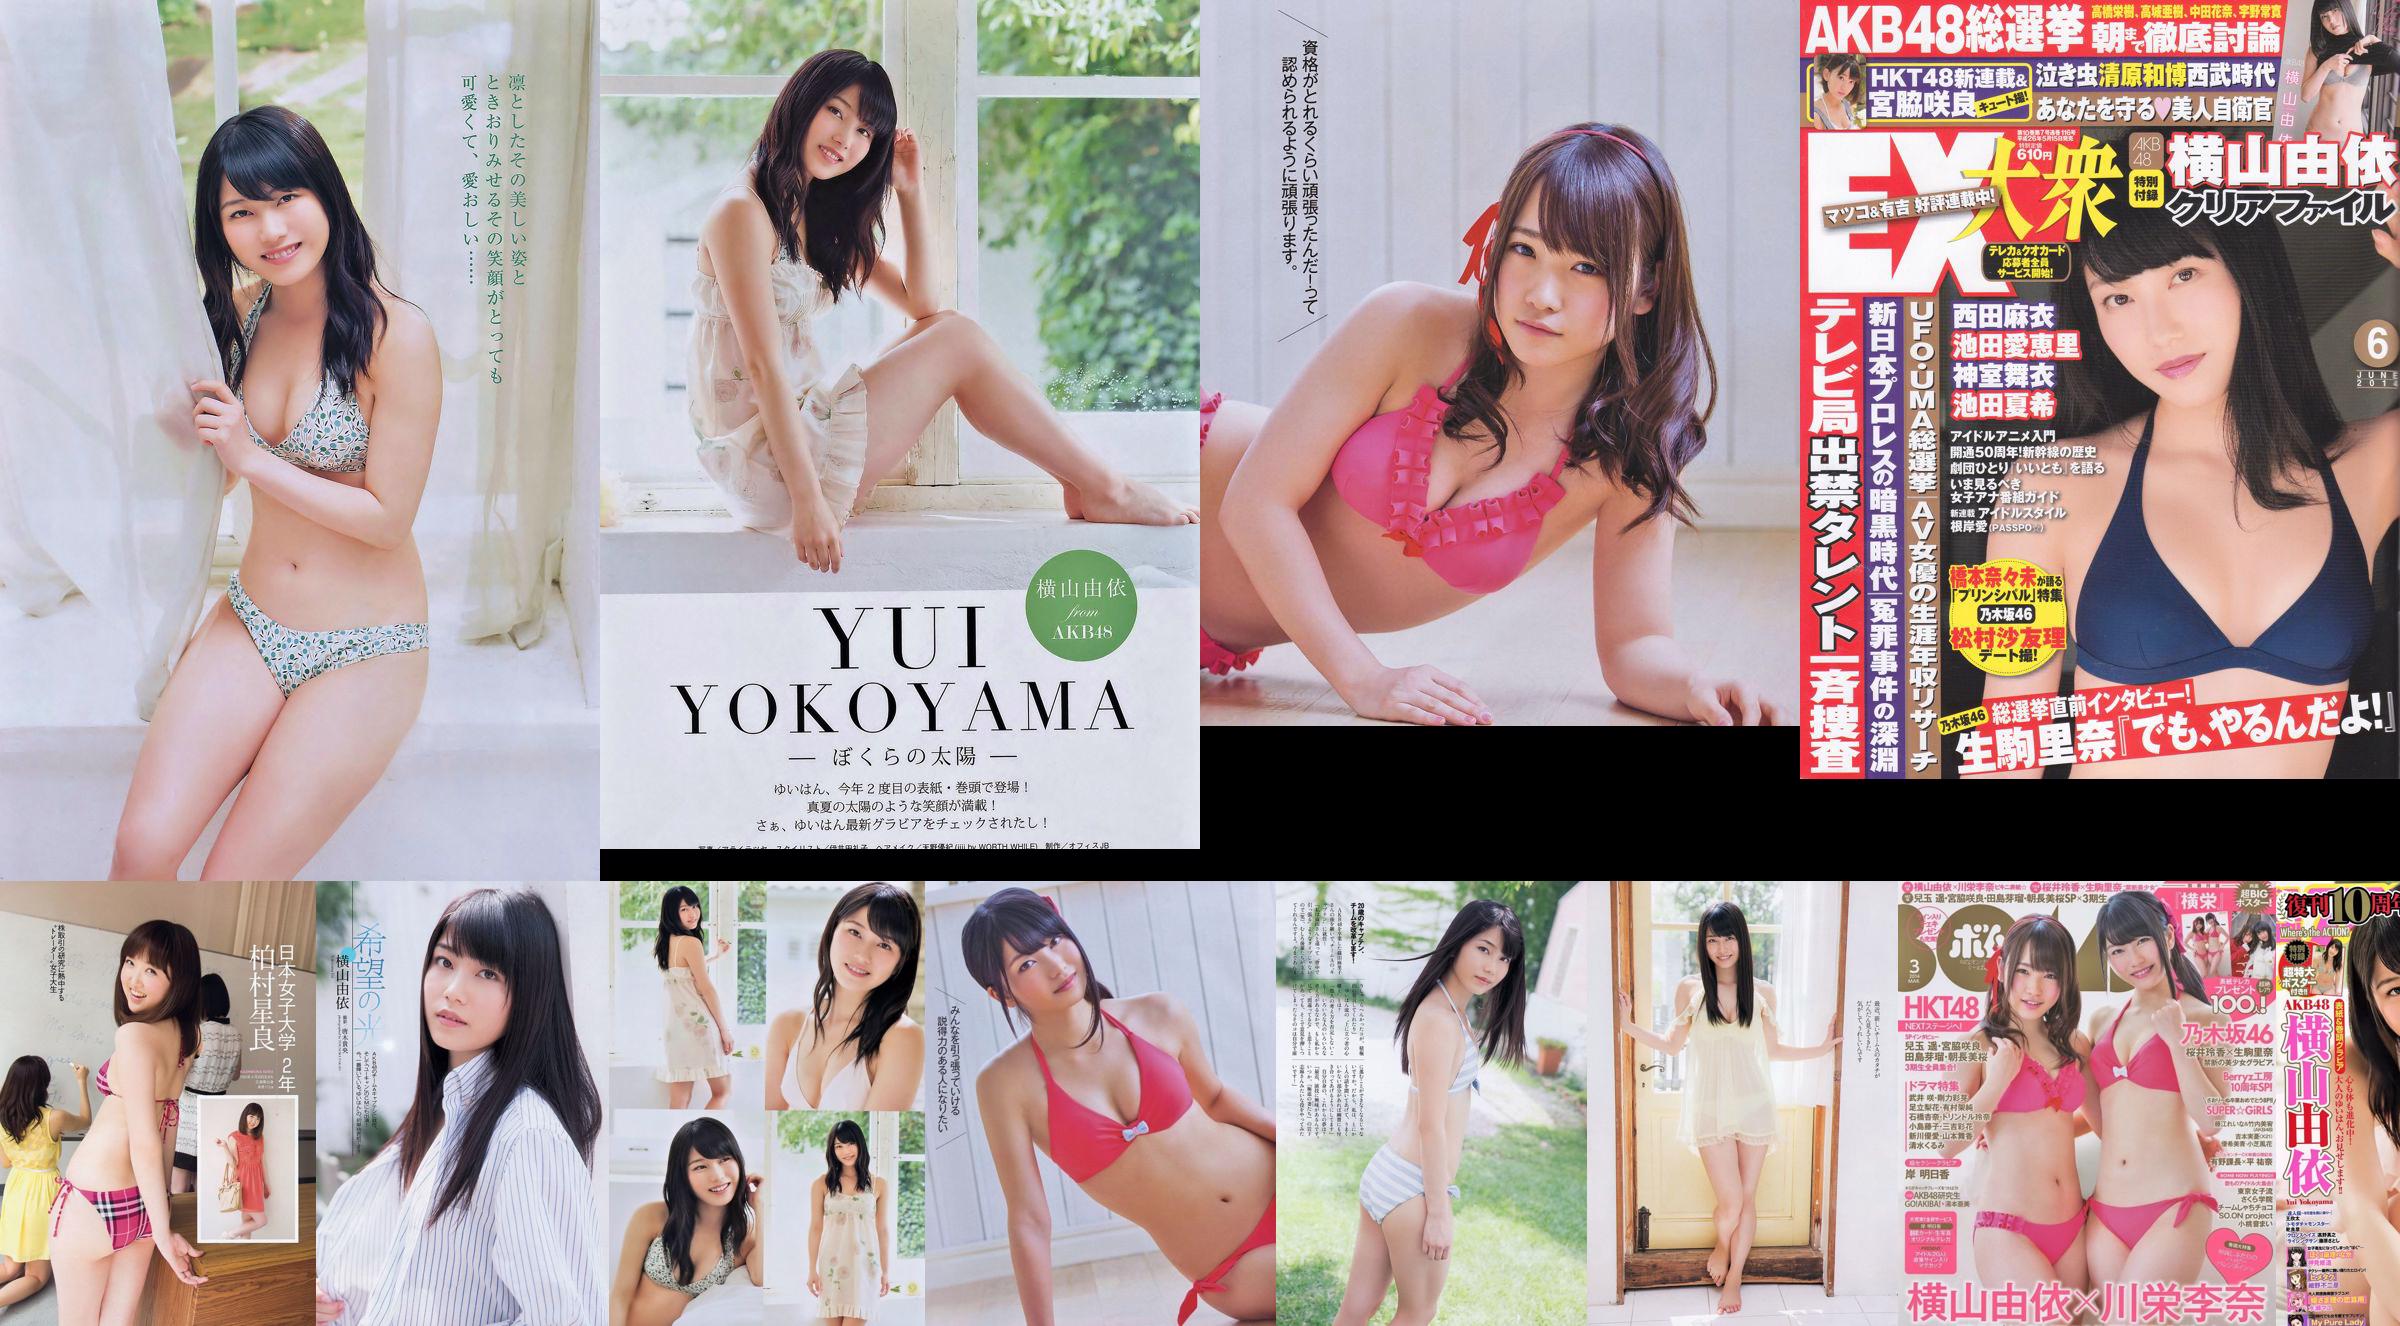 Yui Yokoyama Nozomi Sasaki Rina Koike Asuka Kuramochi Miwako Kakei Risa Yoshiki Ruri Shinato [Weekly Playboy] 2013 No.38 ภาพถ่าย No.6730ab หน้า 5